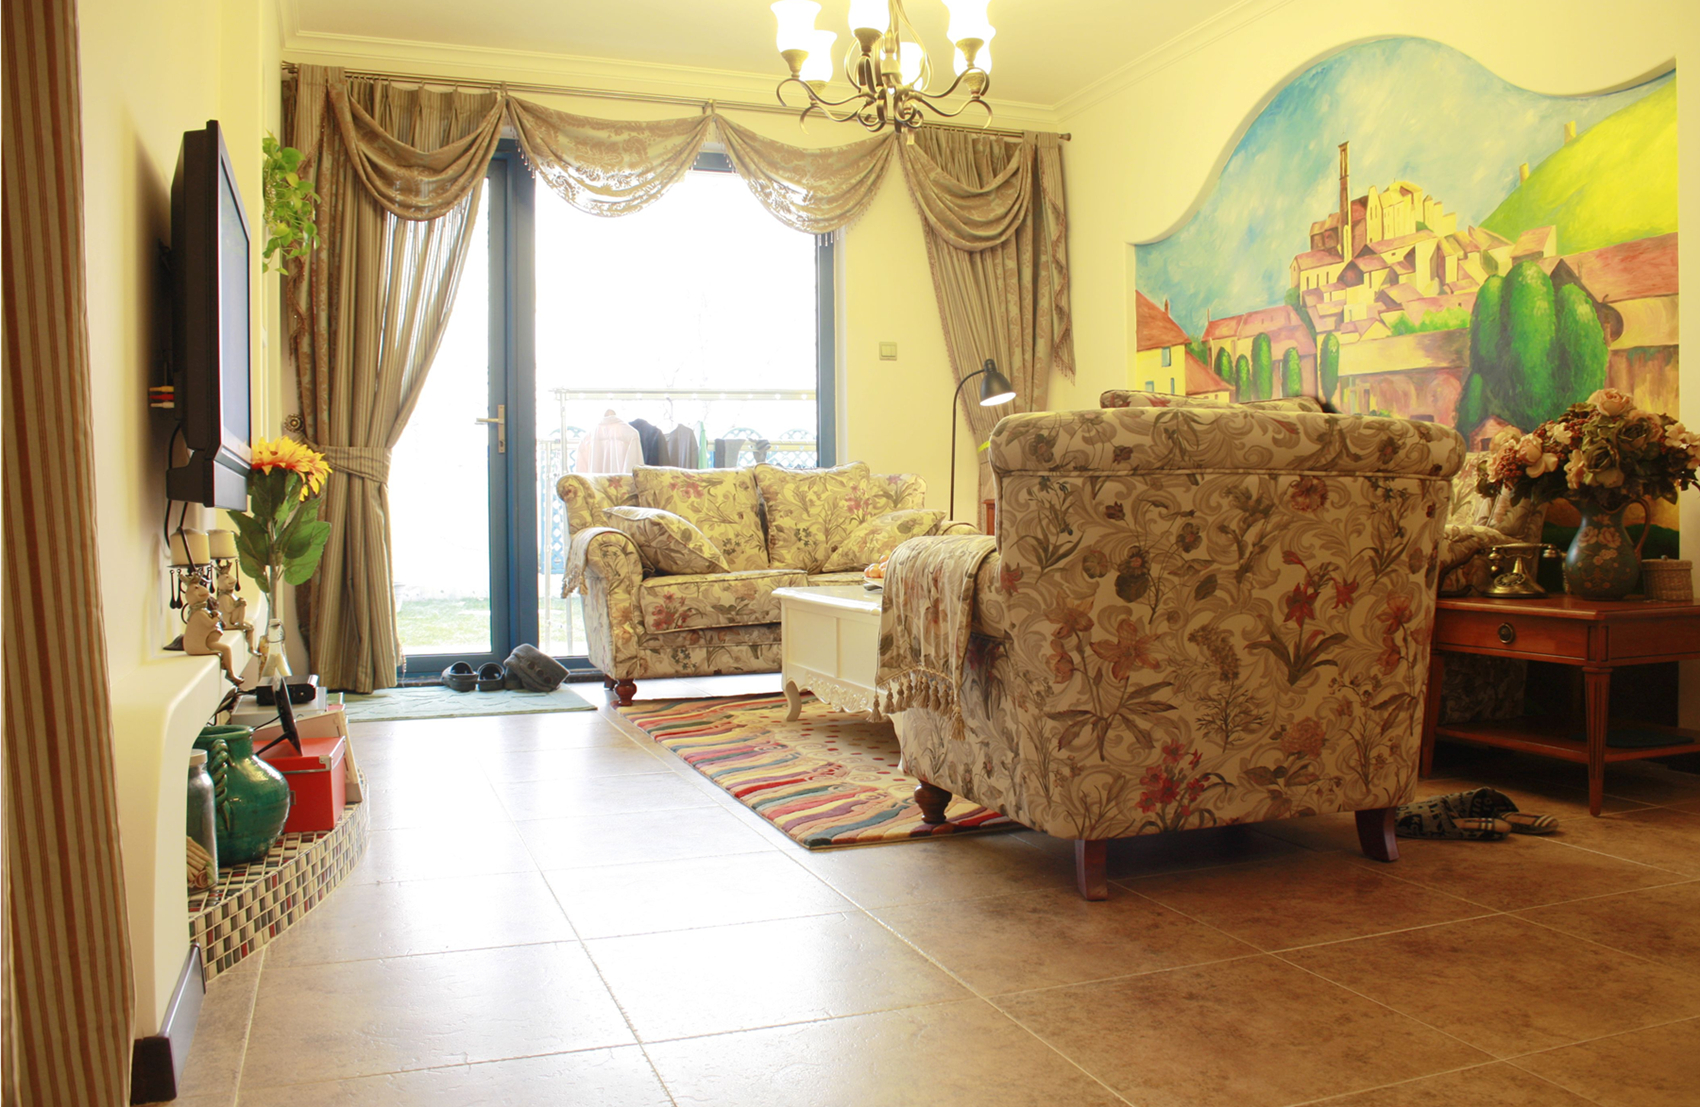 三居 混搭 地中海田园 客厅图片来自今朝装饰小阳在133 地中海 田园的分享